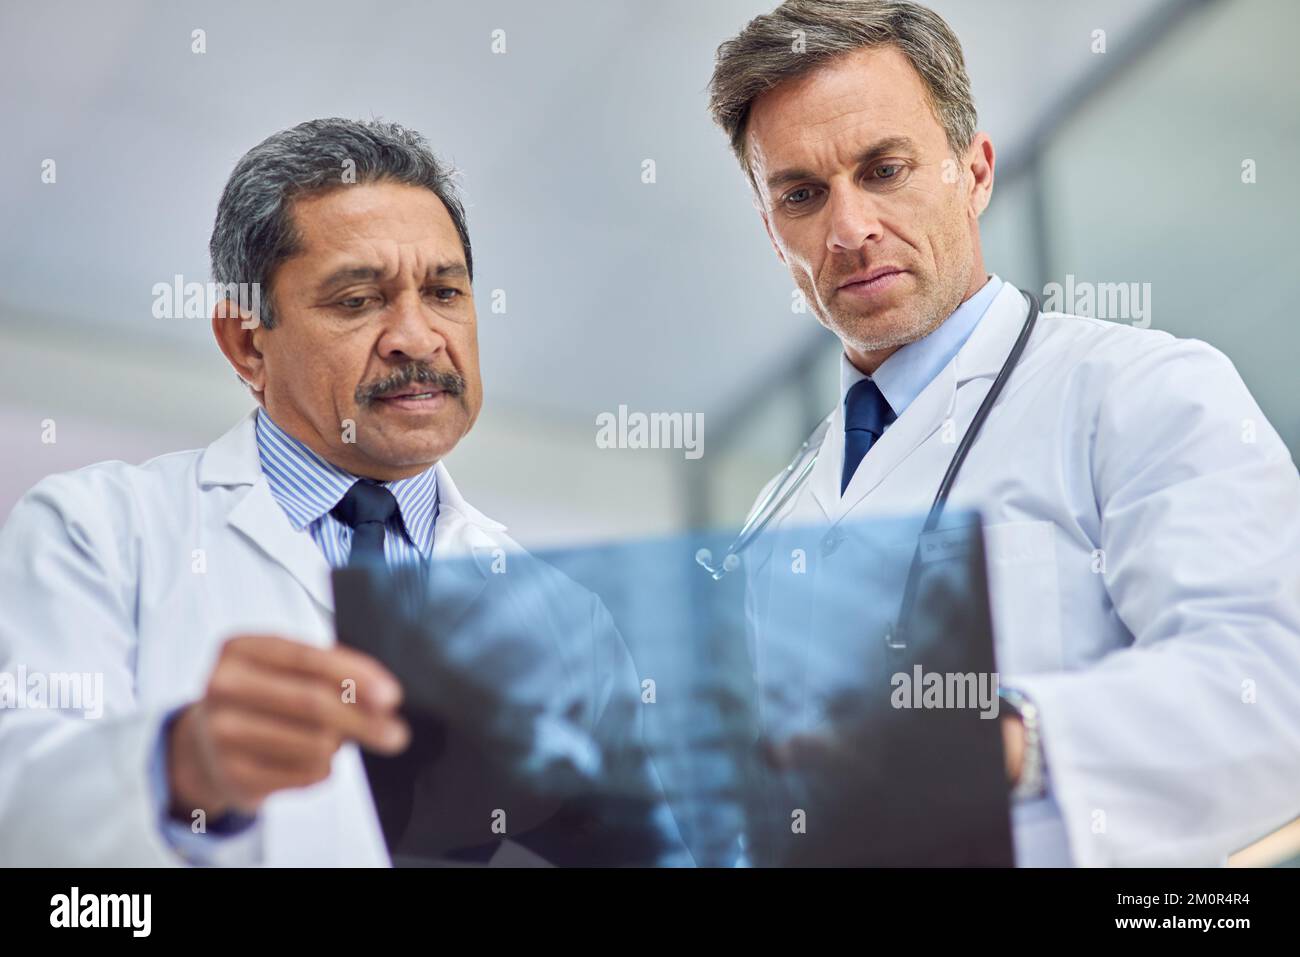 Consultare un collega per un secondo parere. due medici che osservano una radiografia insieme. Foto Stock